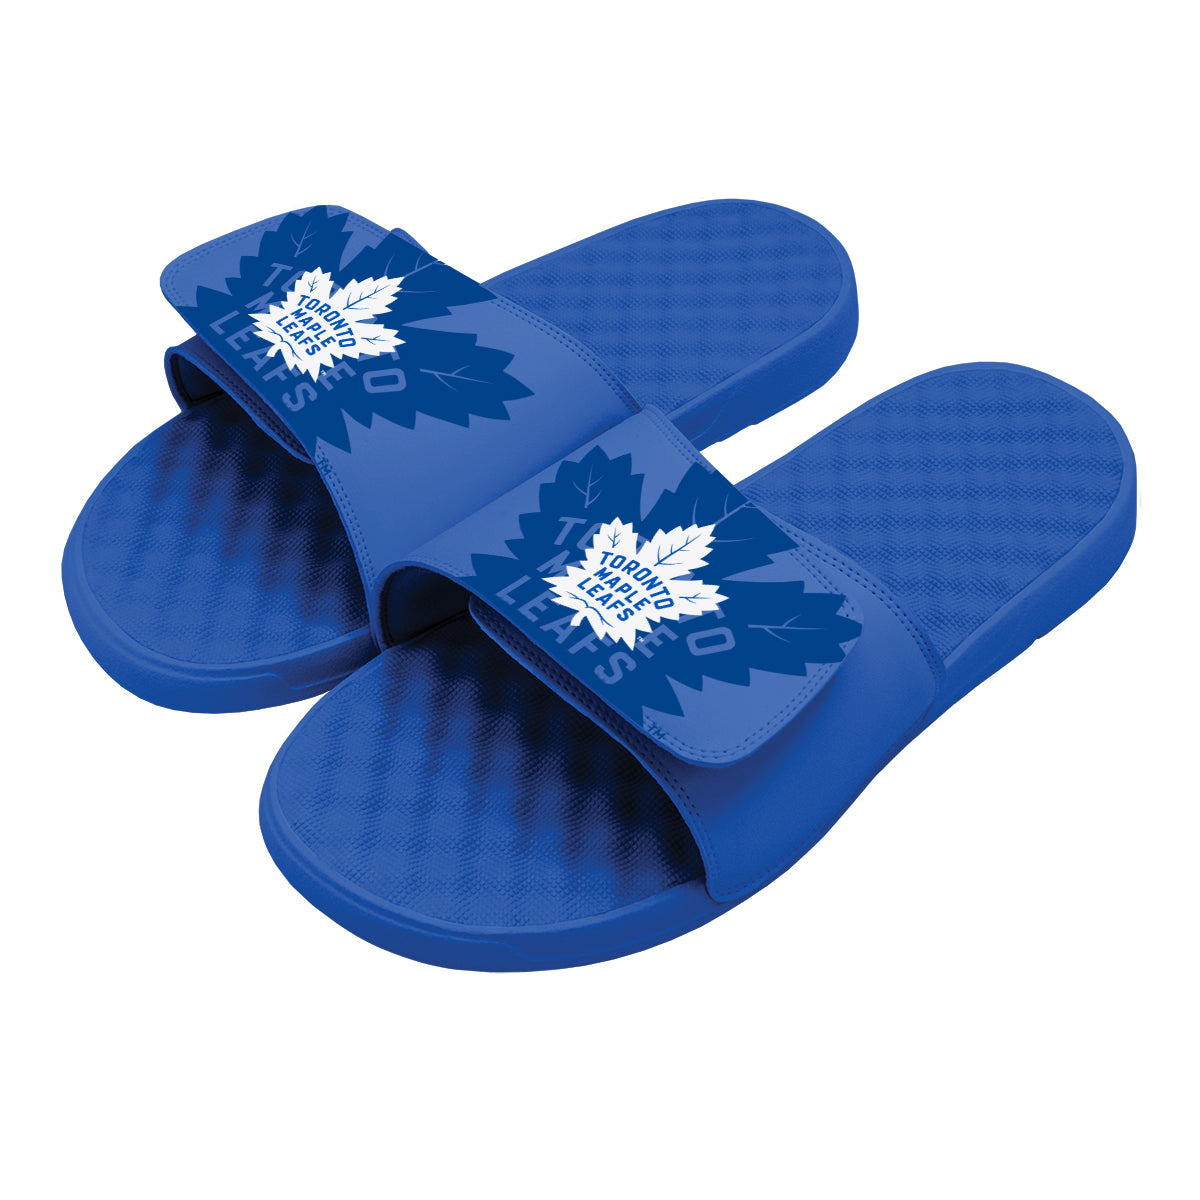 Toronto Maple Leafs OT Slides